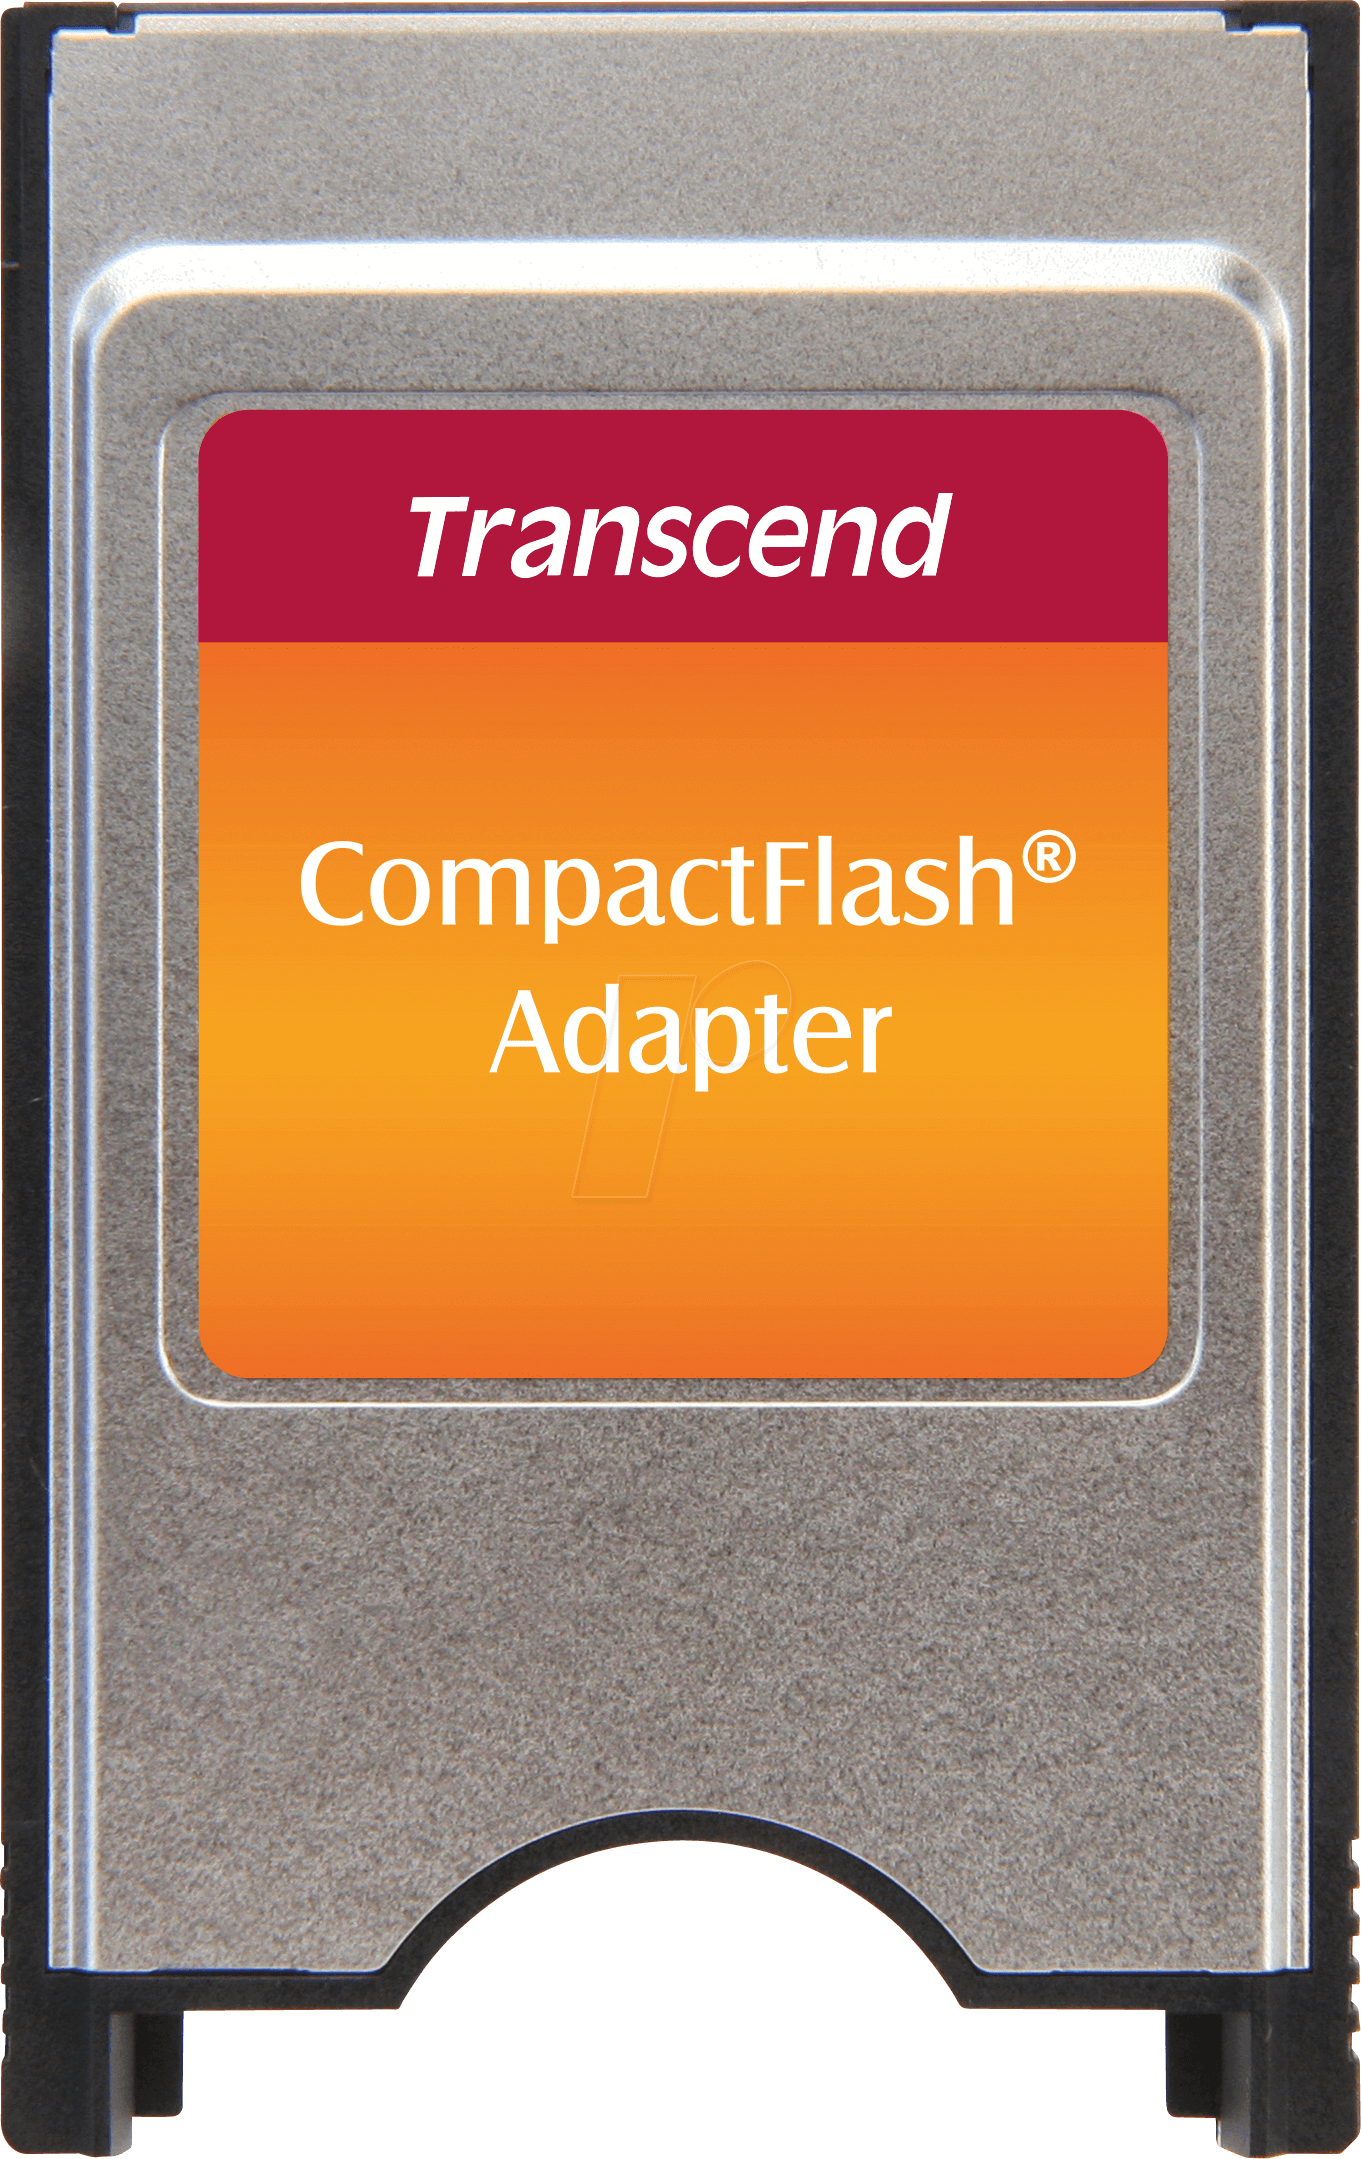 TS-0MCF2PC: Card Reader, Adapter, Compact Flash, PCMCIA at 